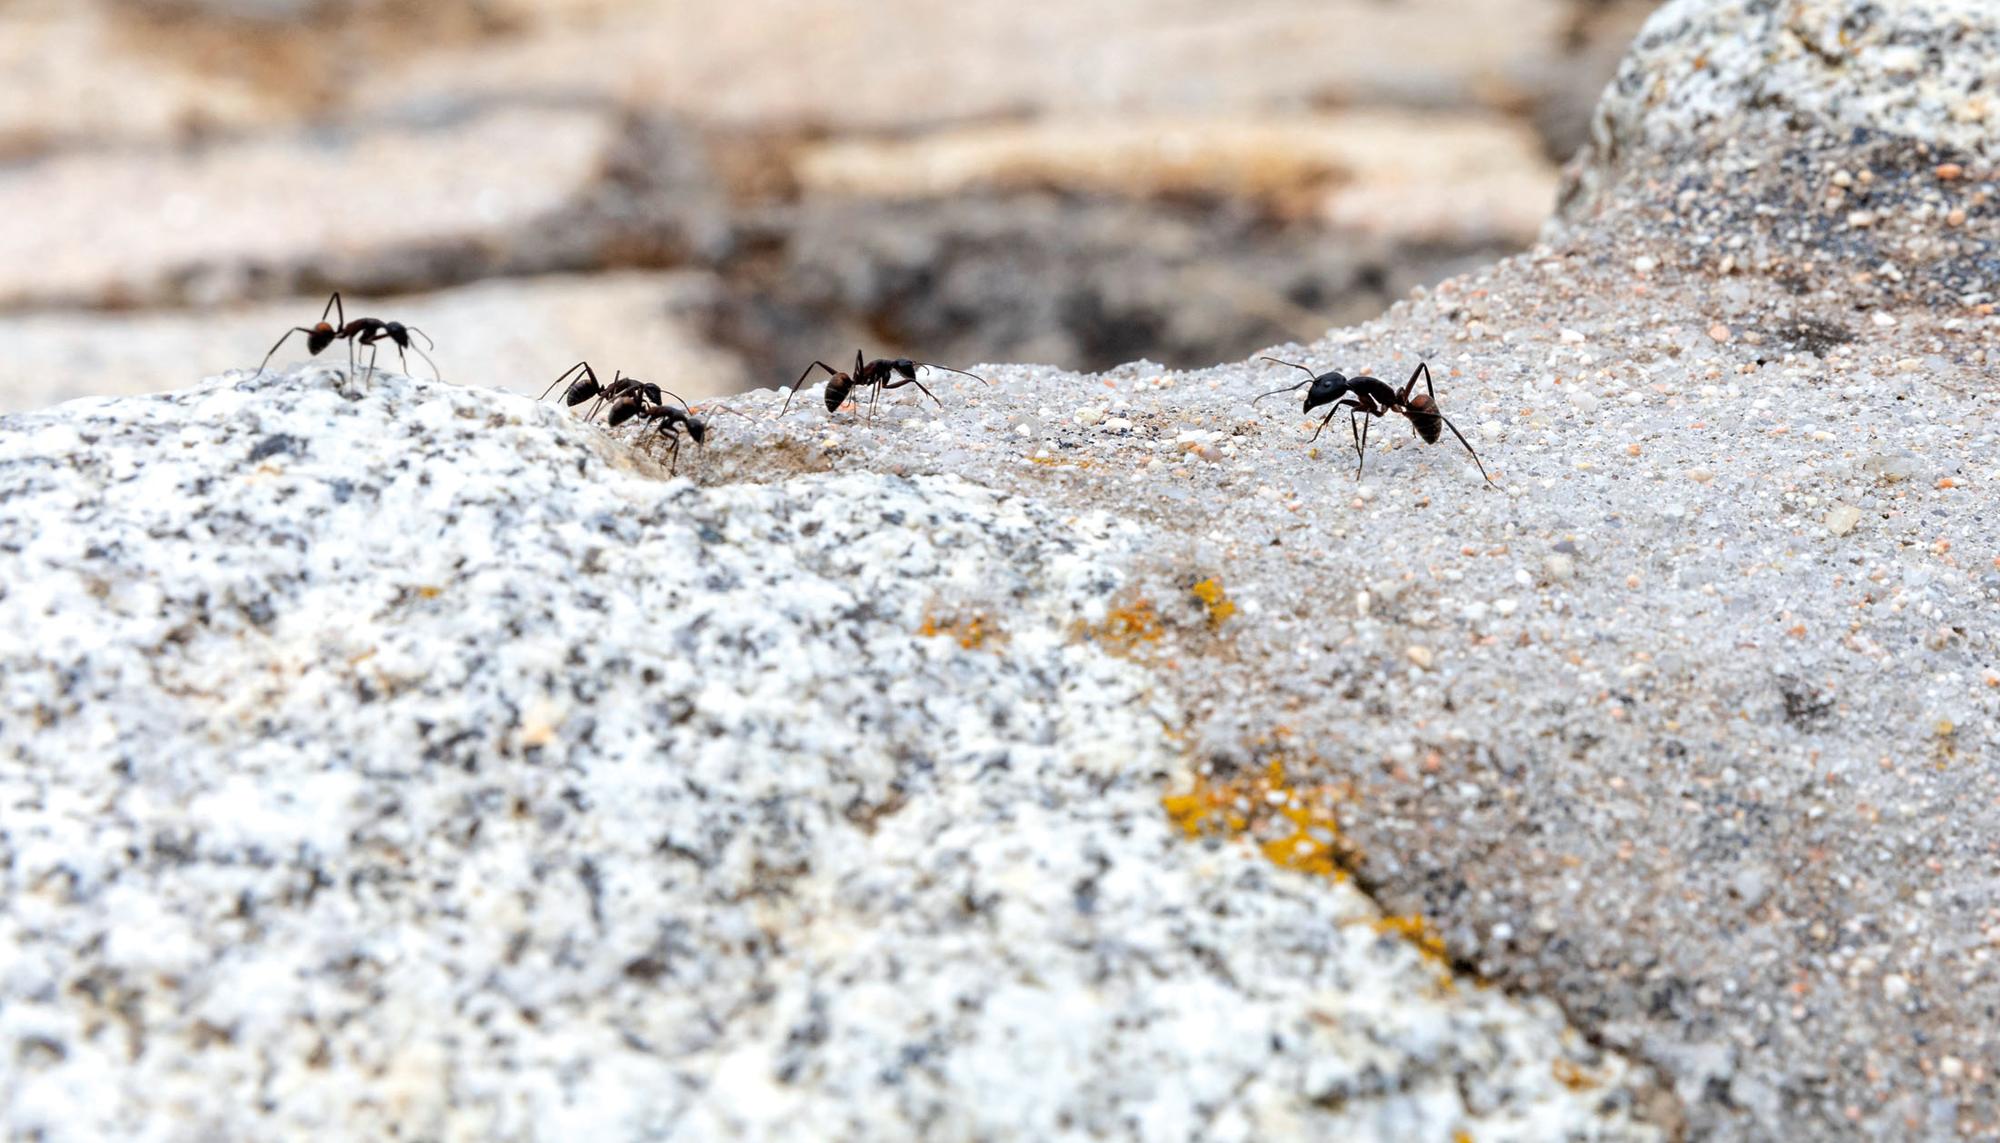 desaparicion insectos hormigas Insecticidio